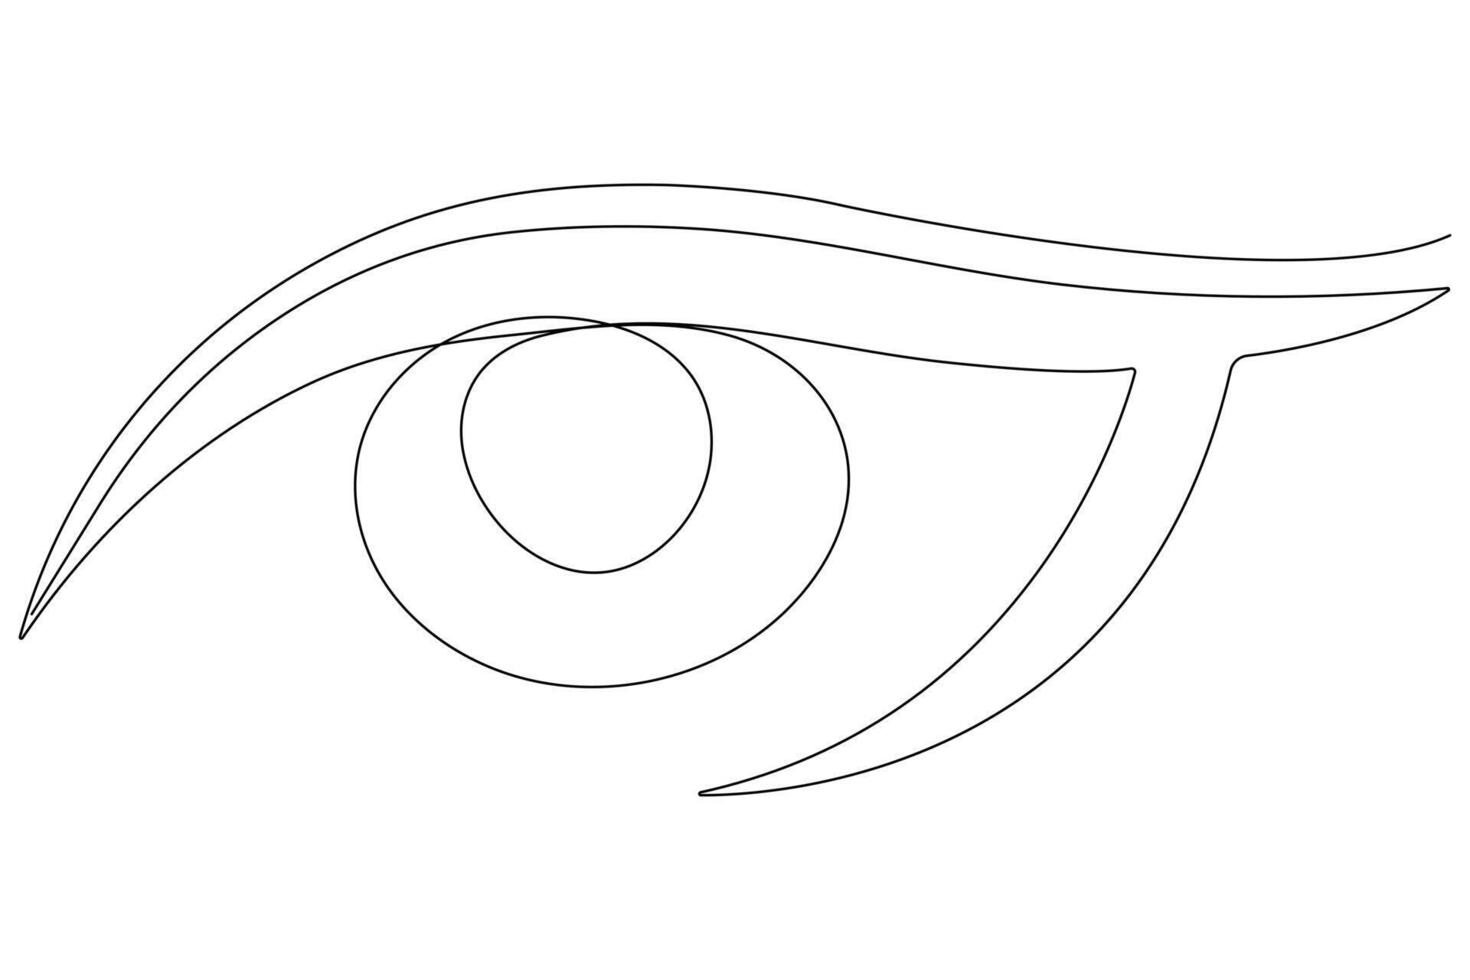 oog symbool in doorlopend een lijn kunst tekening van menselijk oog teken schets vector illustratie